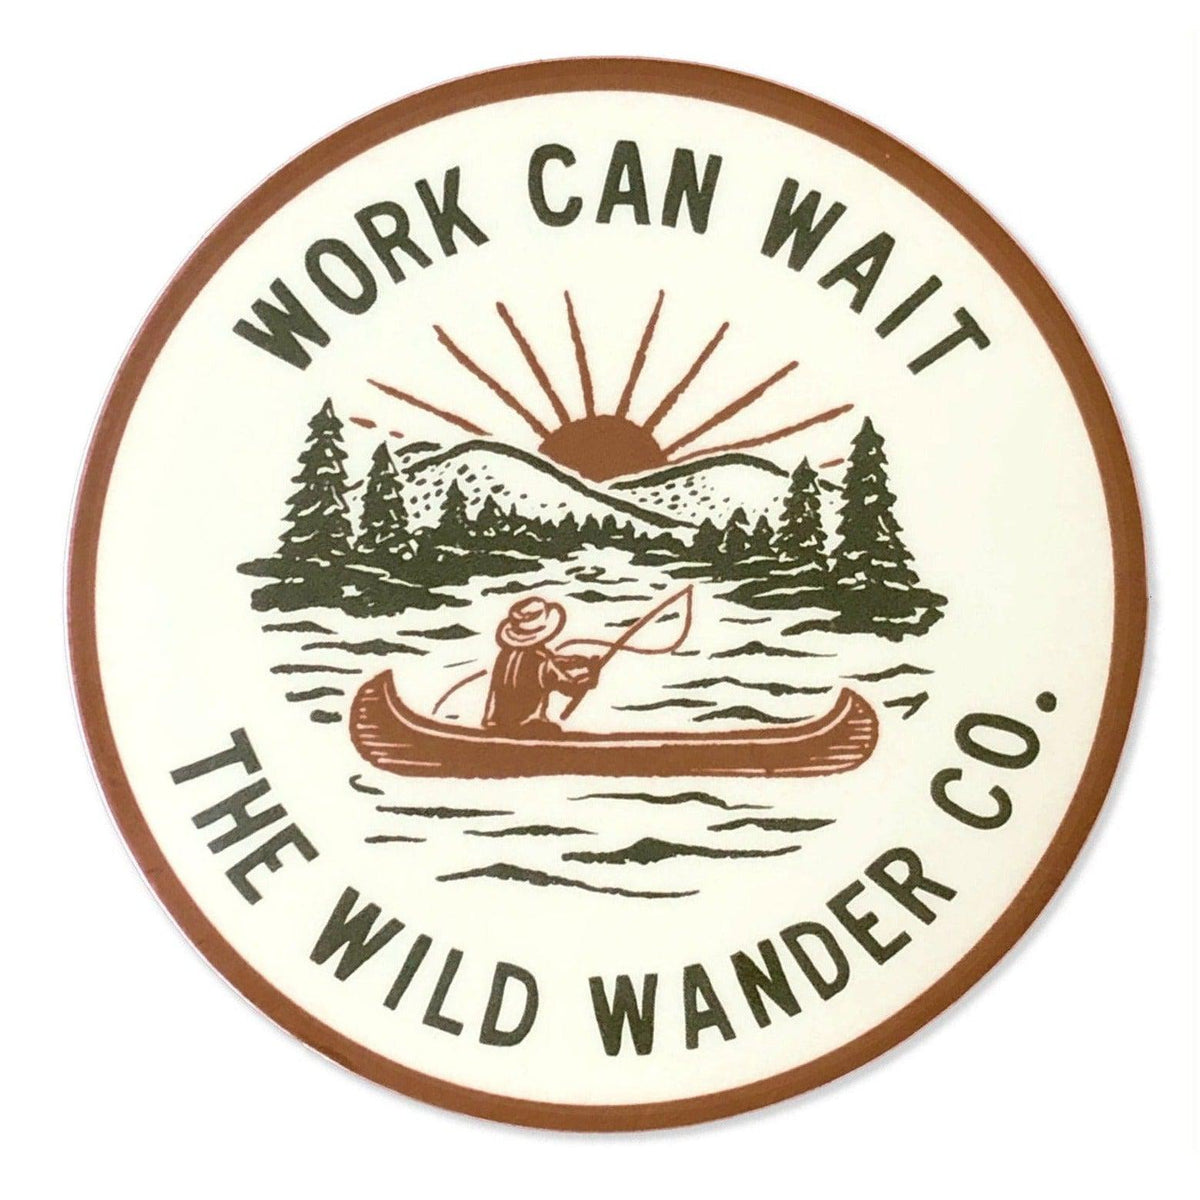 Work Can Wait sticker by The Wild Wander.